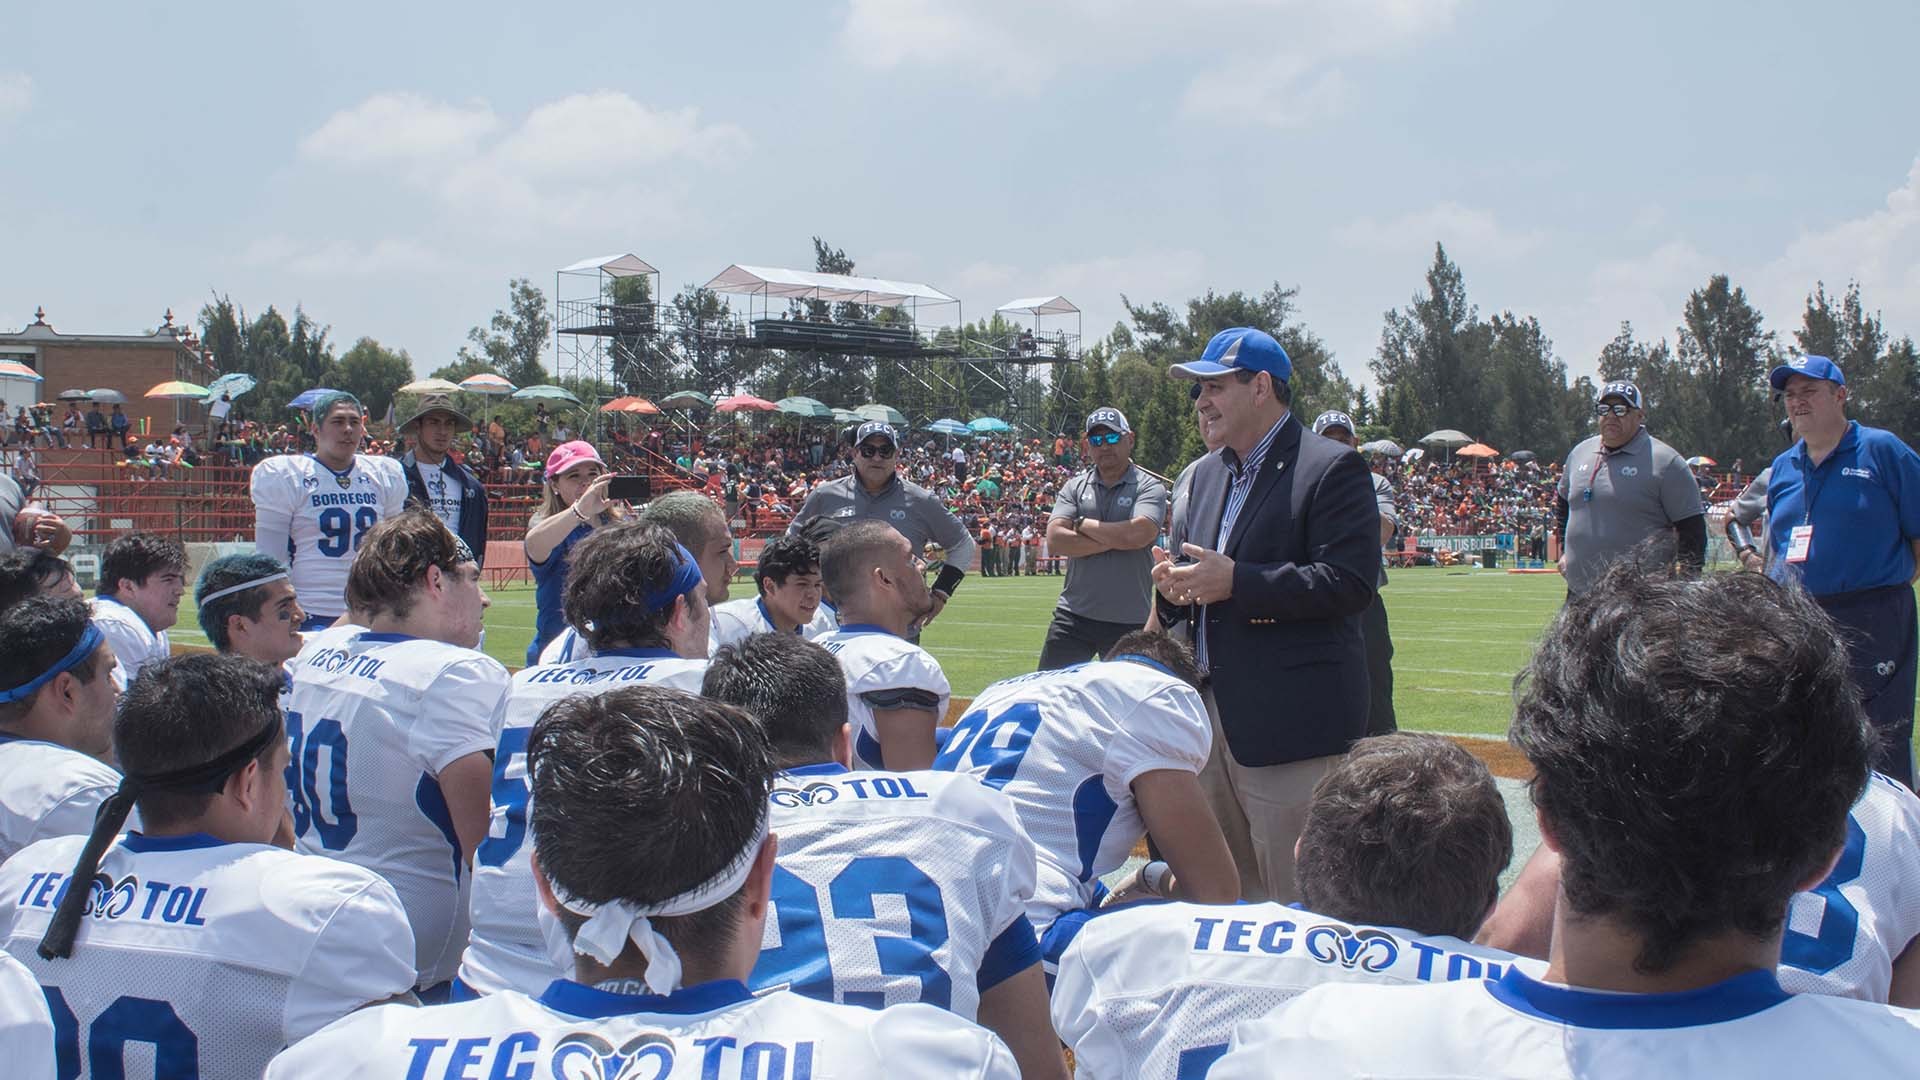 Primer jornada deportiva de los equipos representativos del Tec campus Toluca.